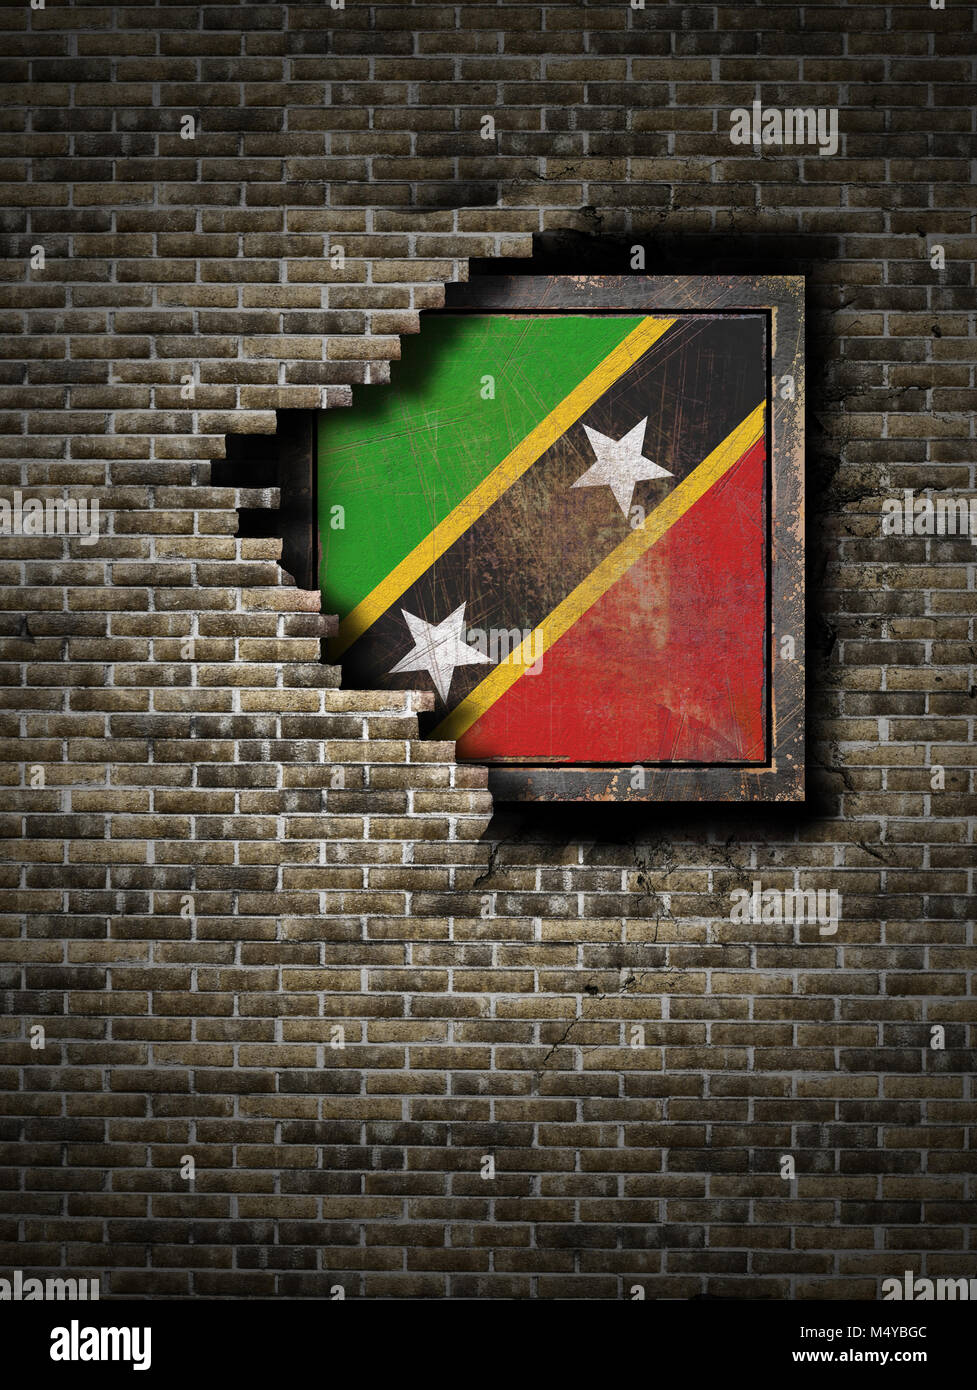 3D-Rendering für eine Saint Christopher und Nevis Flagge über eine rostige Metallplatte embebed auf einer alten Mauer Stockfoto